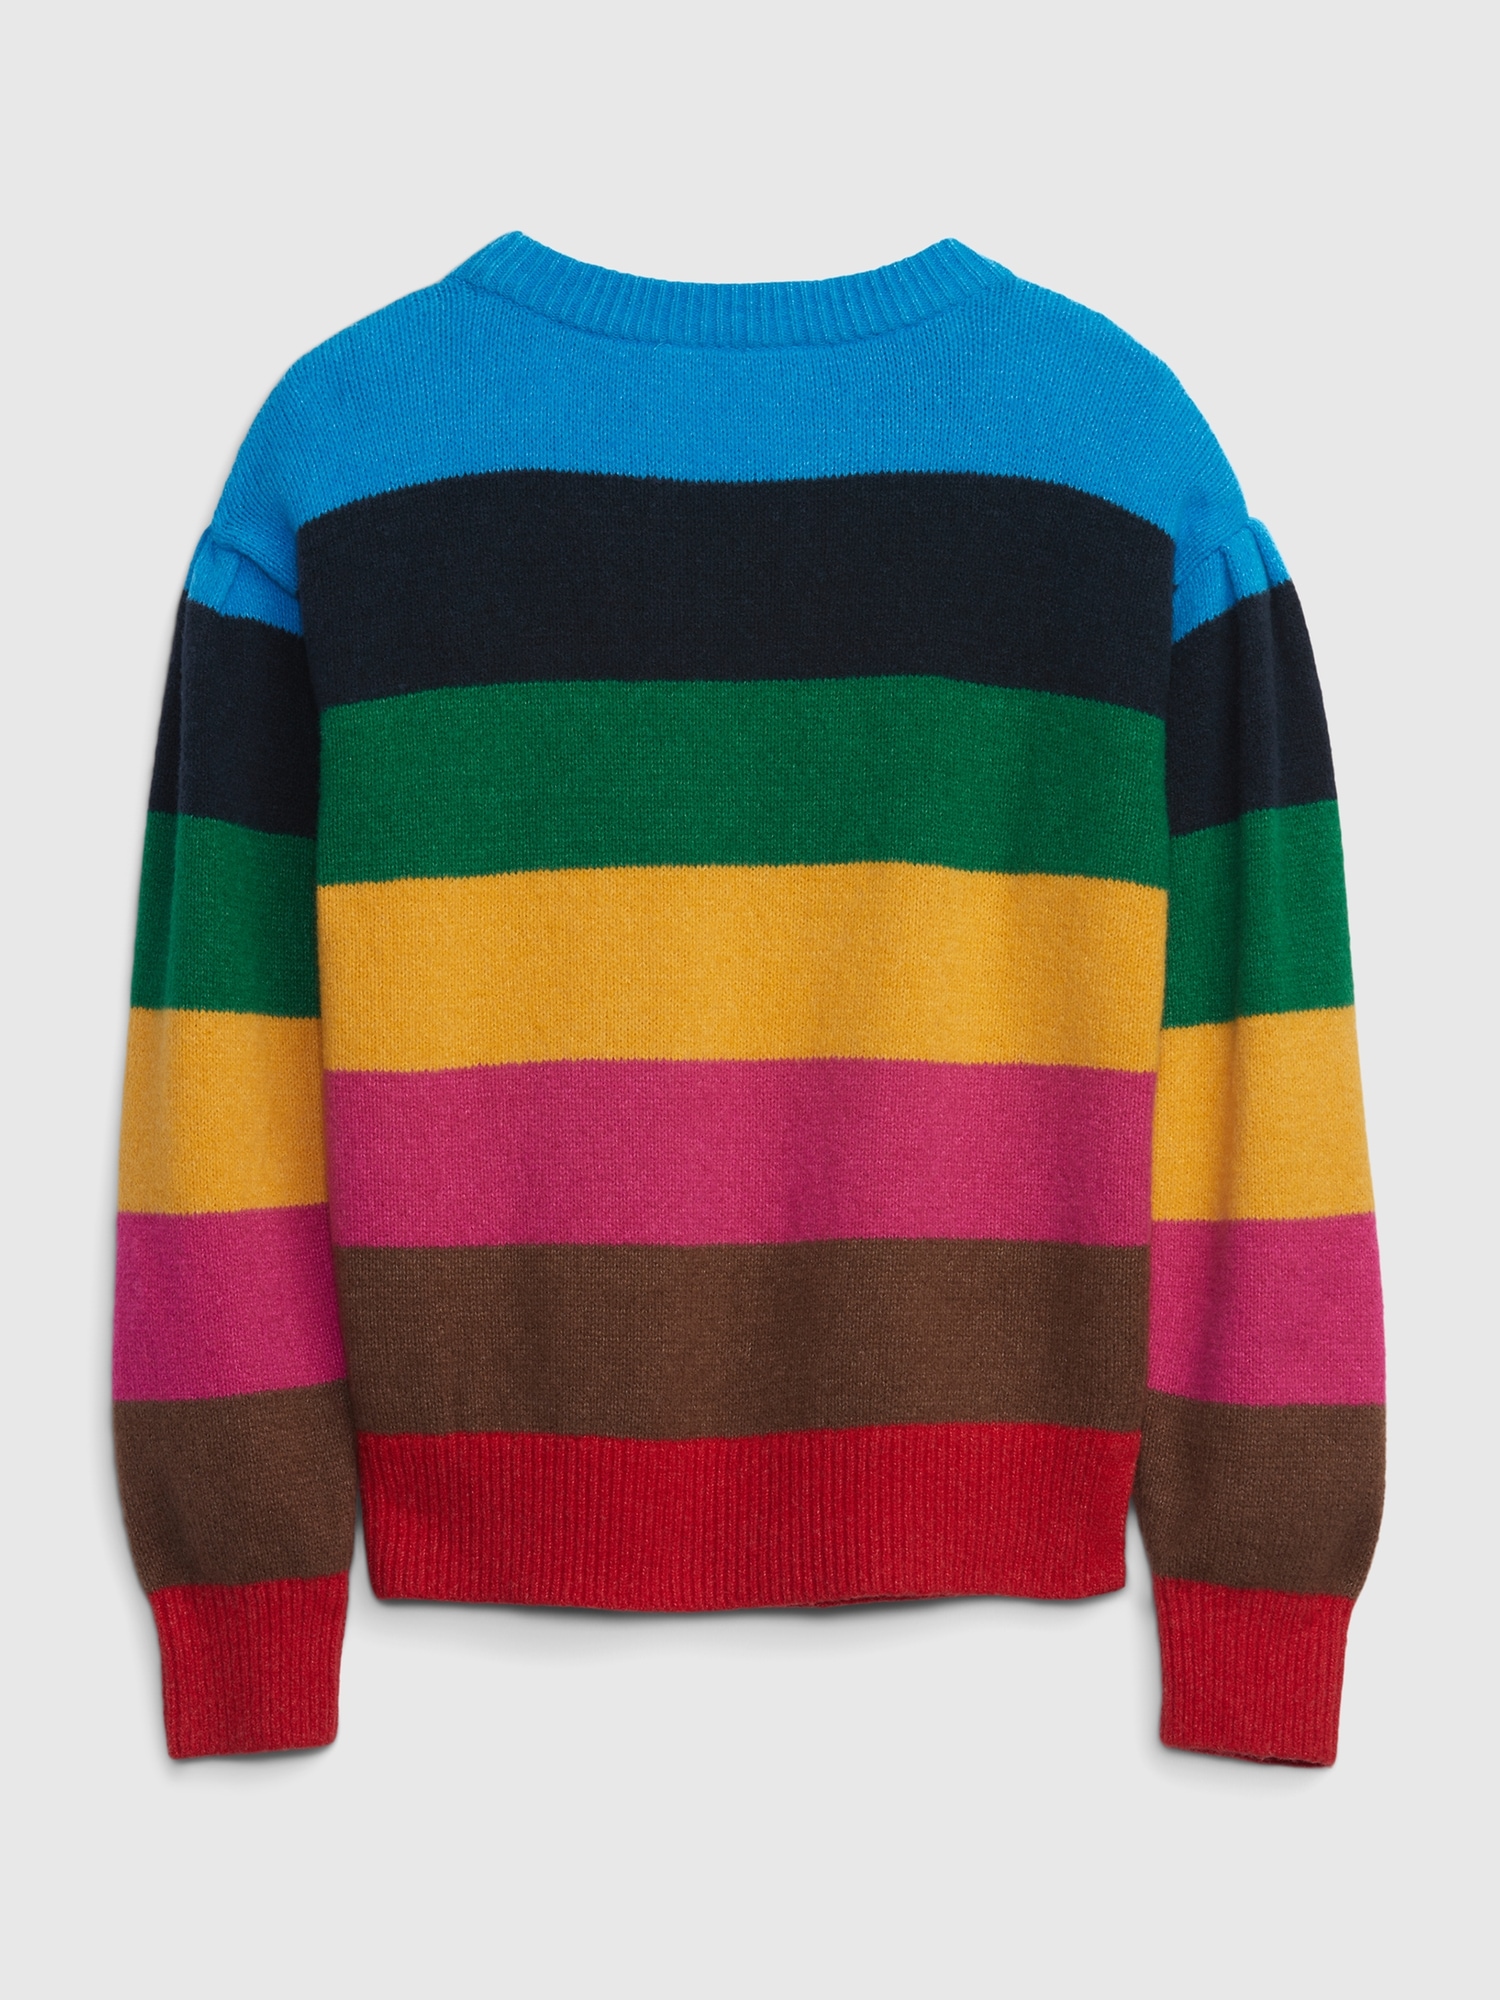 Kids Happy Stripe Sweater | Gap